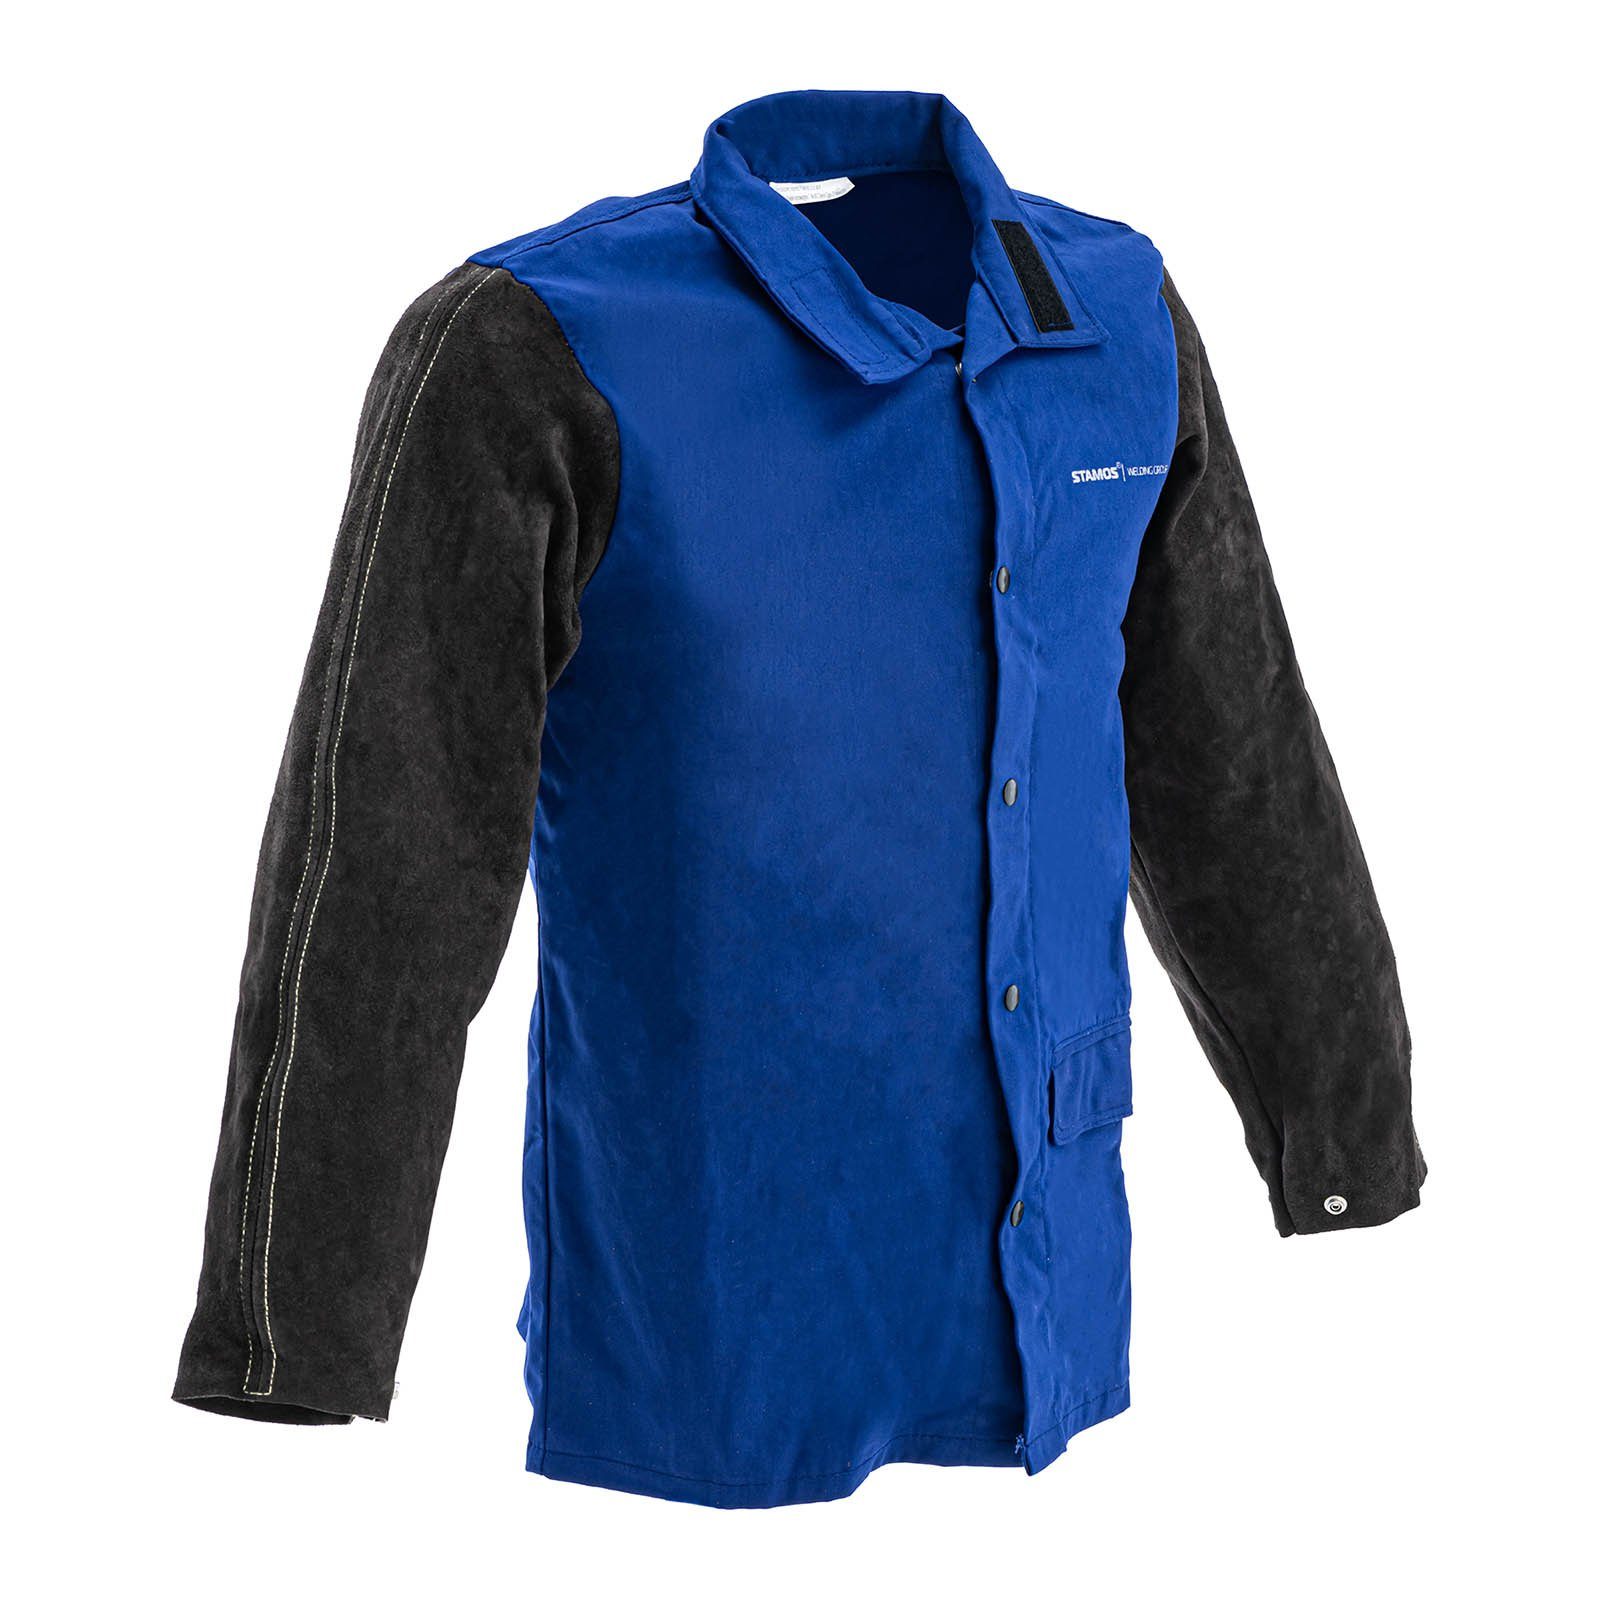 -größe Schweißerjacke XL-schwarz/blau aus Arbeitsjacke Stamos Baumwollsatin/Rindspaltleder Group Welding